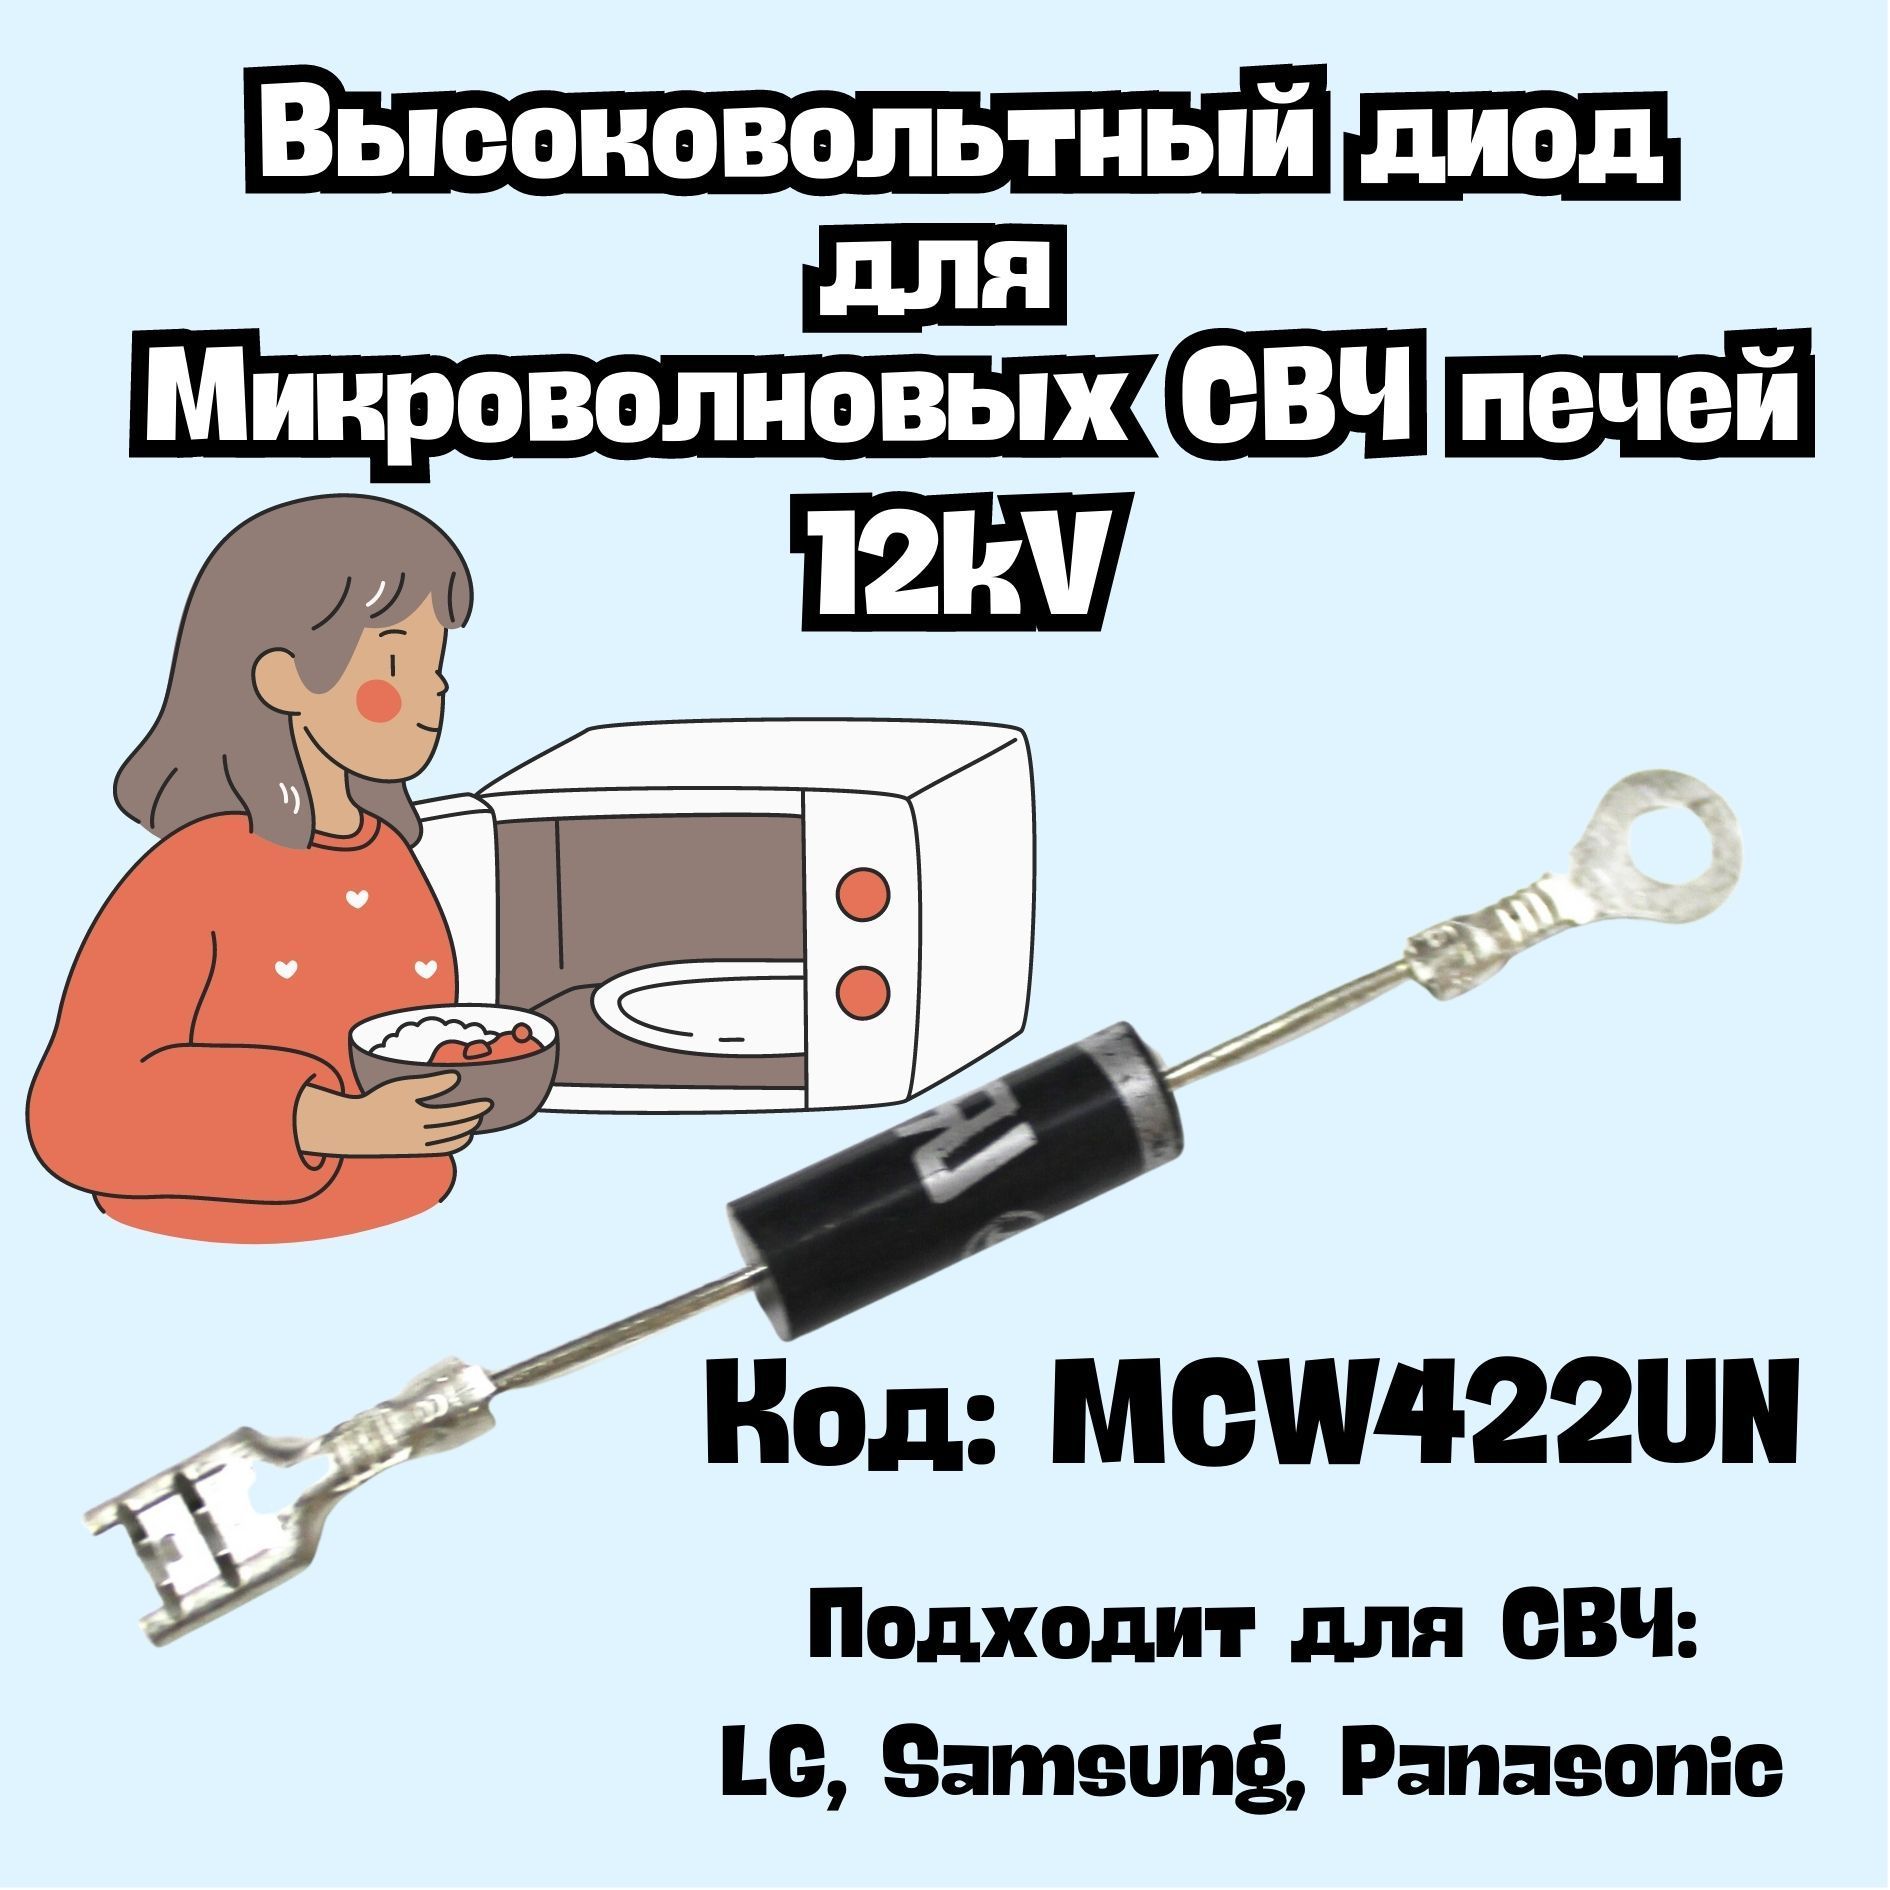 ДиодвысоковольтныйдляСВЧ(микроволновойпечи)12кв,MCW422UN